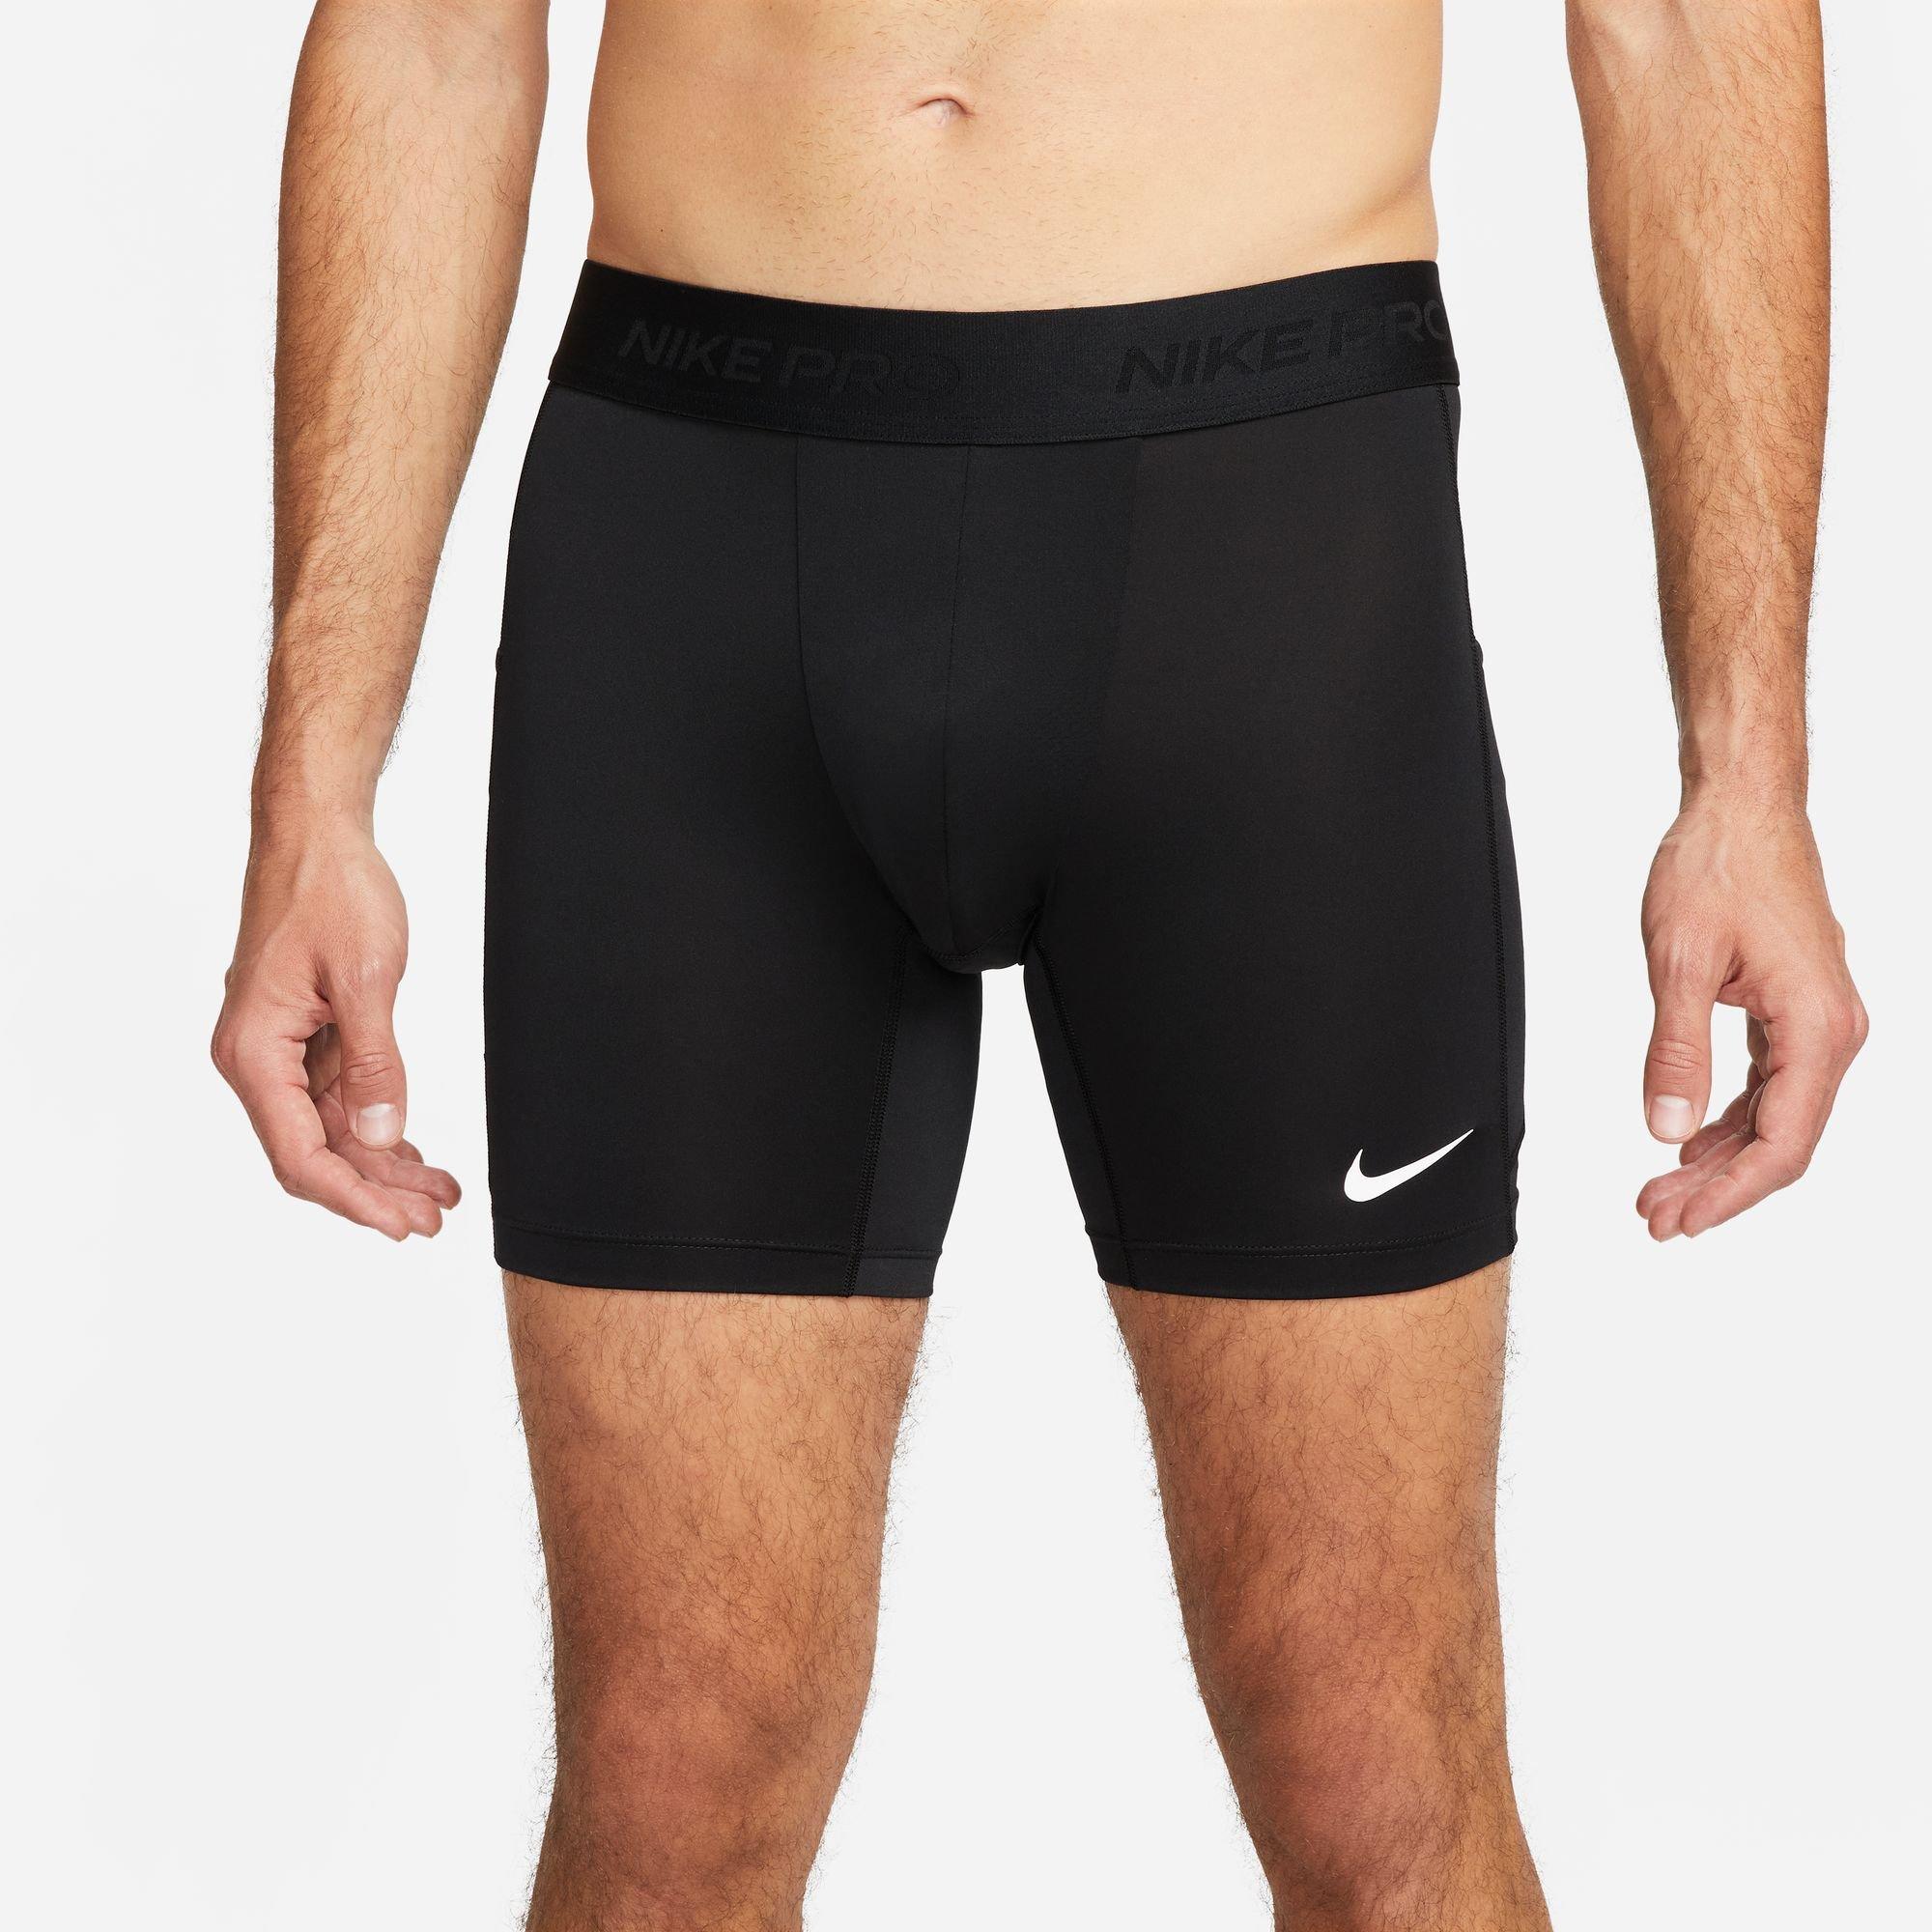 Nike Yoga Dri-FIT Men's Training Pants (Medium, Black/Heather) at   Men's Clothing store